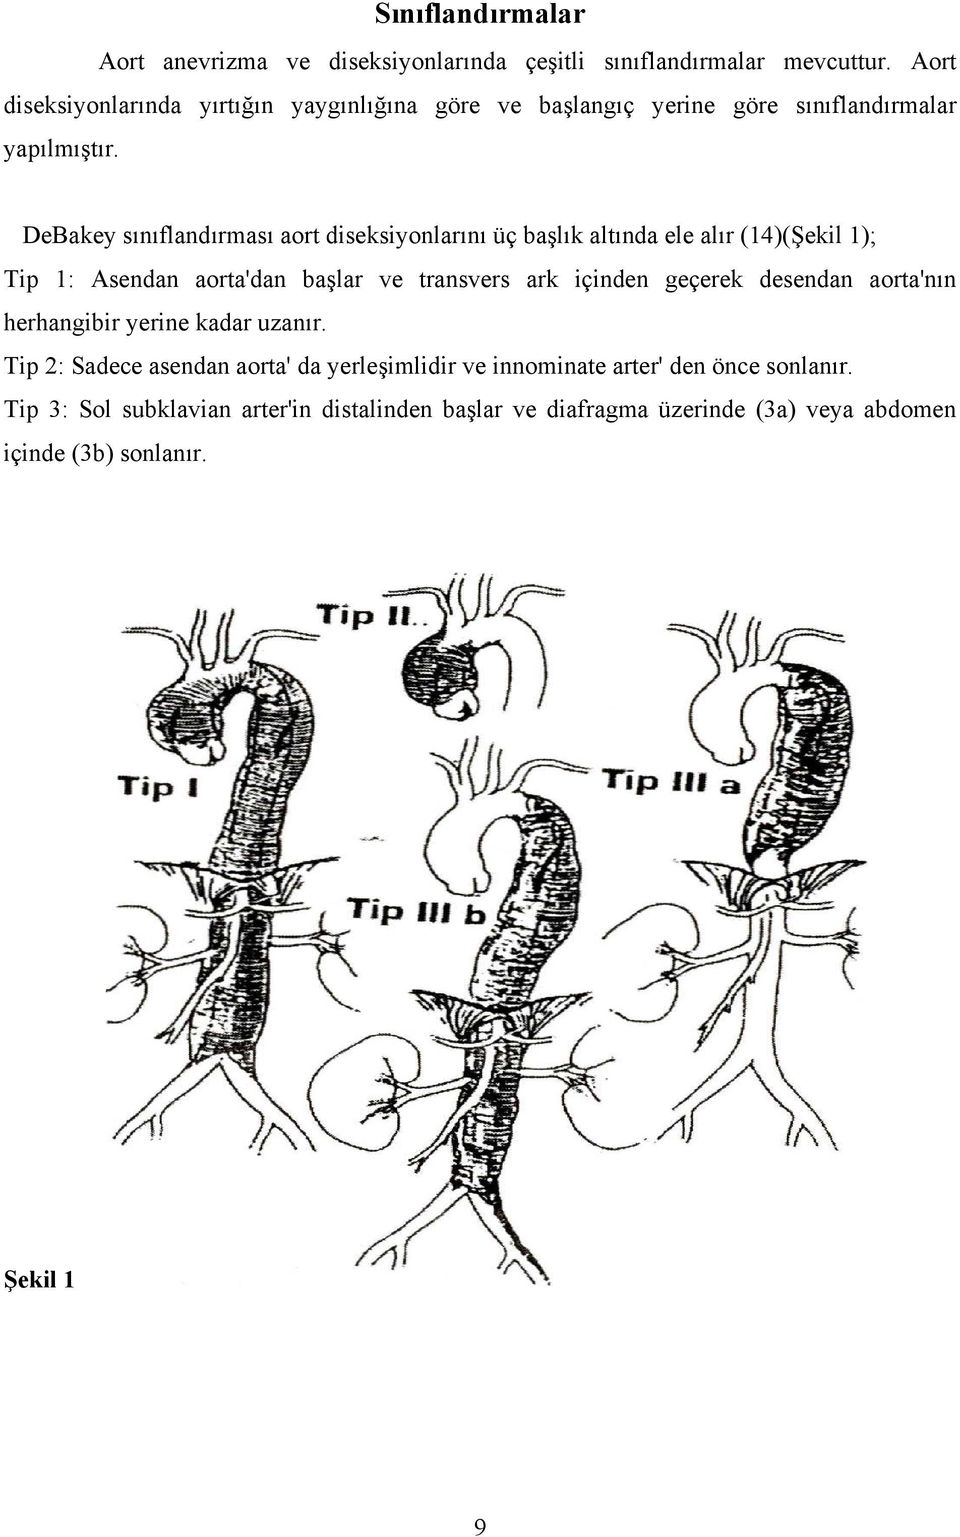 DeBakey sınıflandırması aort diseksiyonlarını üç başlık altında ele alır (14)(Şekil 1); Tip 1: Asendan aorta'dan başlar ve transvers ark içinden